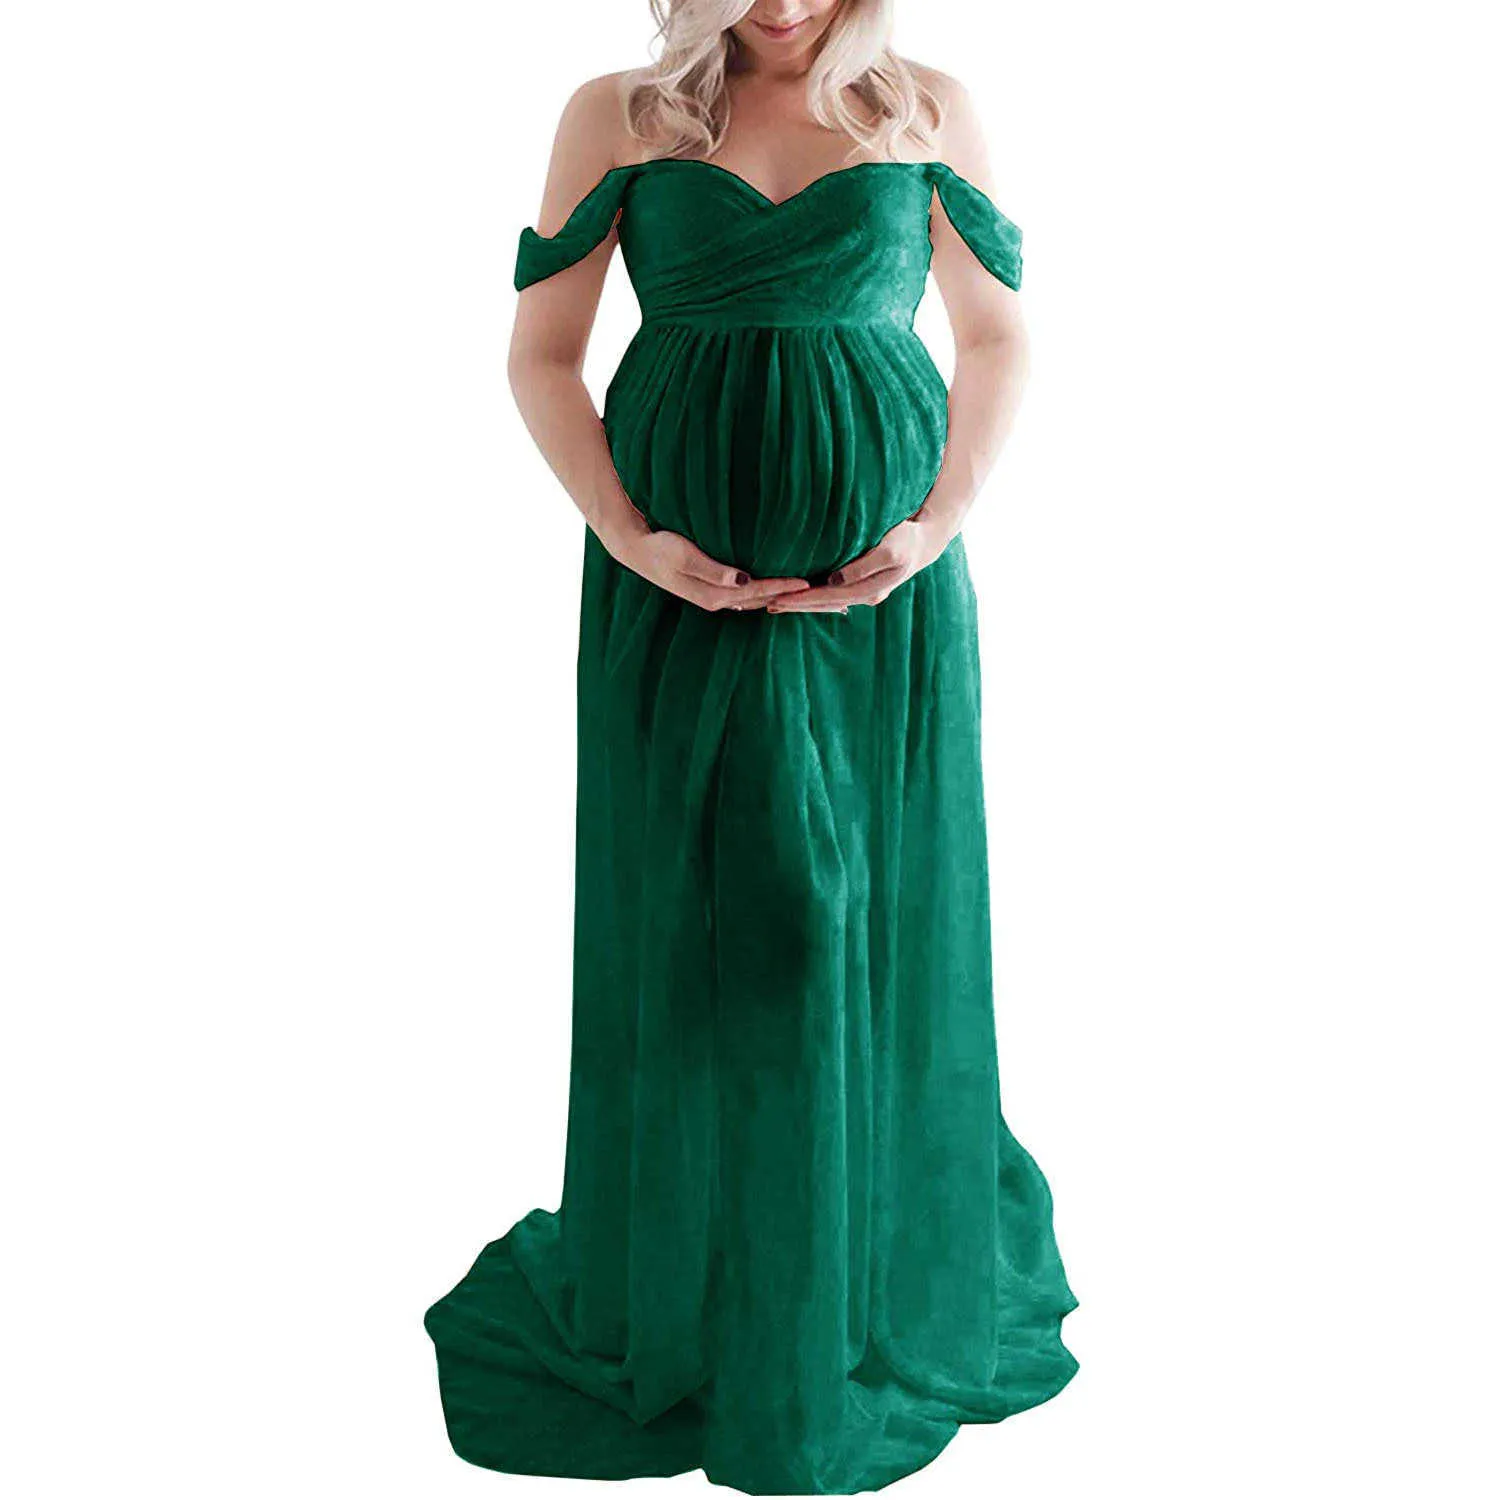 Nieuwe 2021 moederschap jurken voor fotoshoot zwangere vrouwen opening mop lange rok jurk voordat u foto's maakt Zwangerschap Draag Y0924